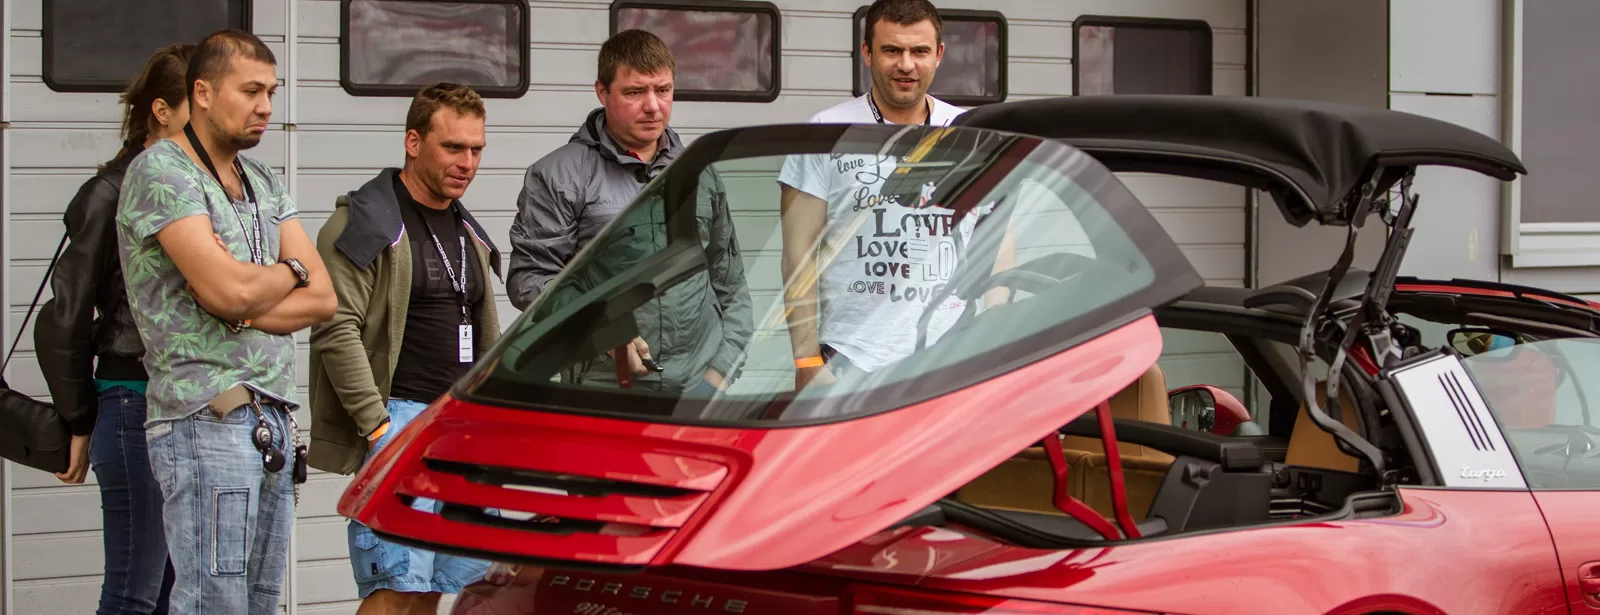 21 июня 2014 года Порше Центр Москва провел динамичный тест-драйв спортивных моделей Porsche